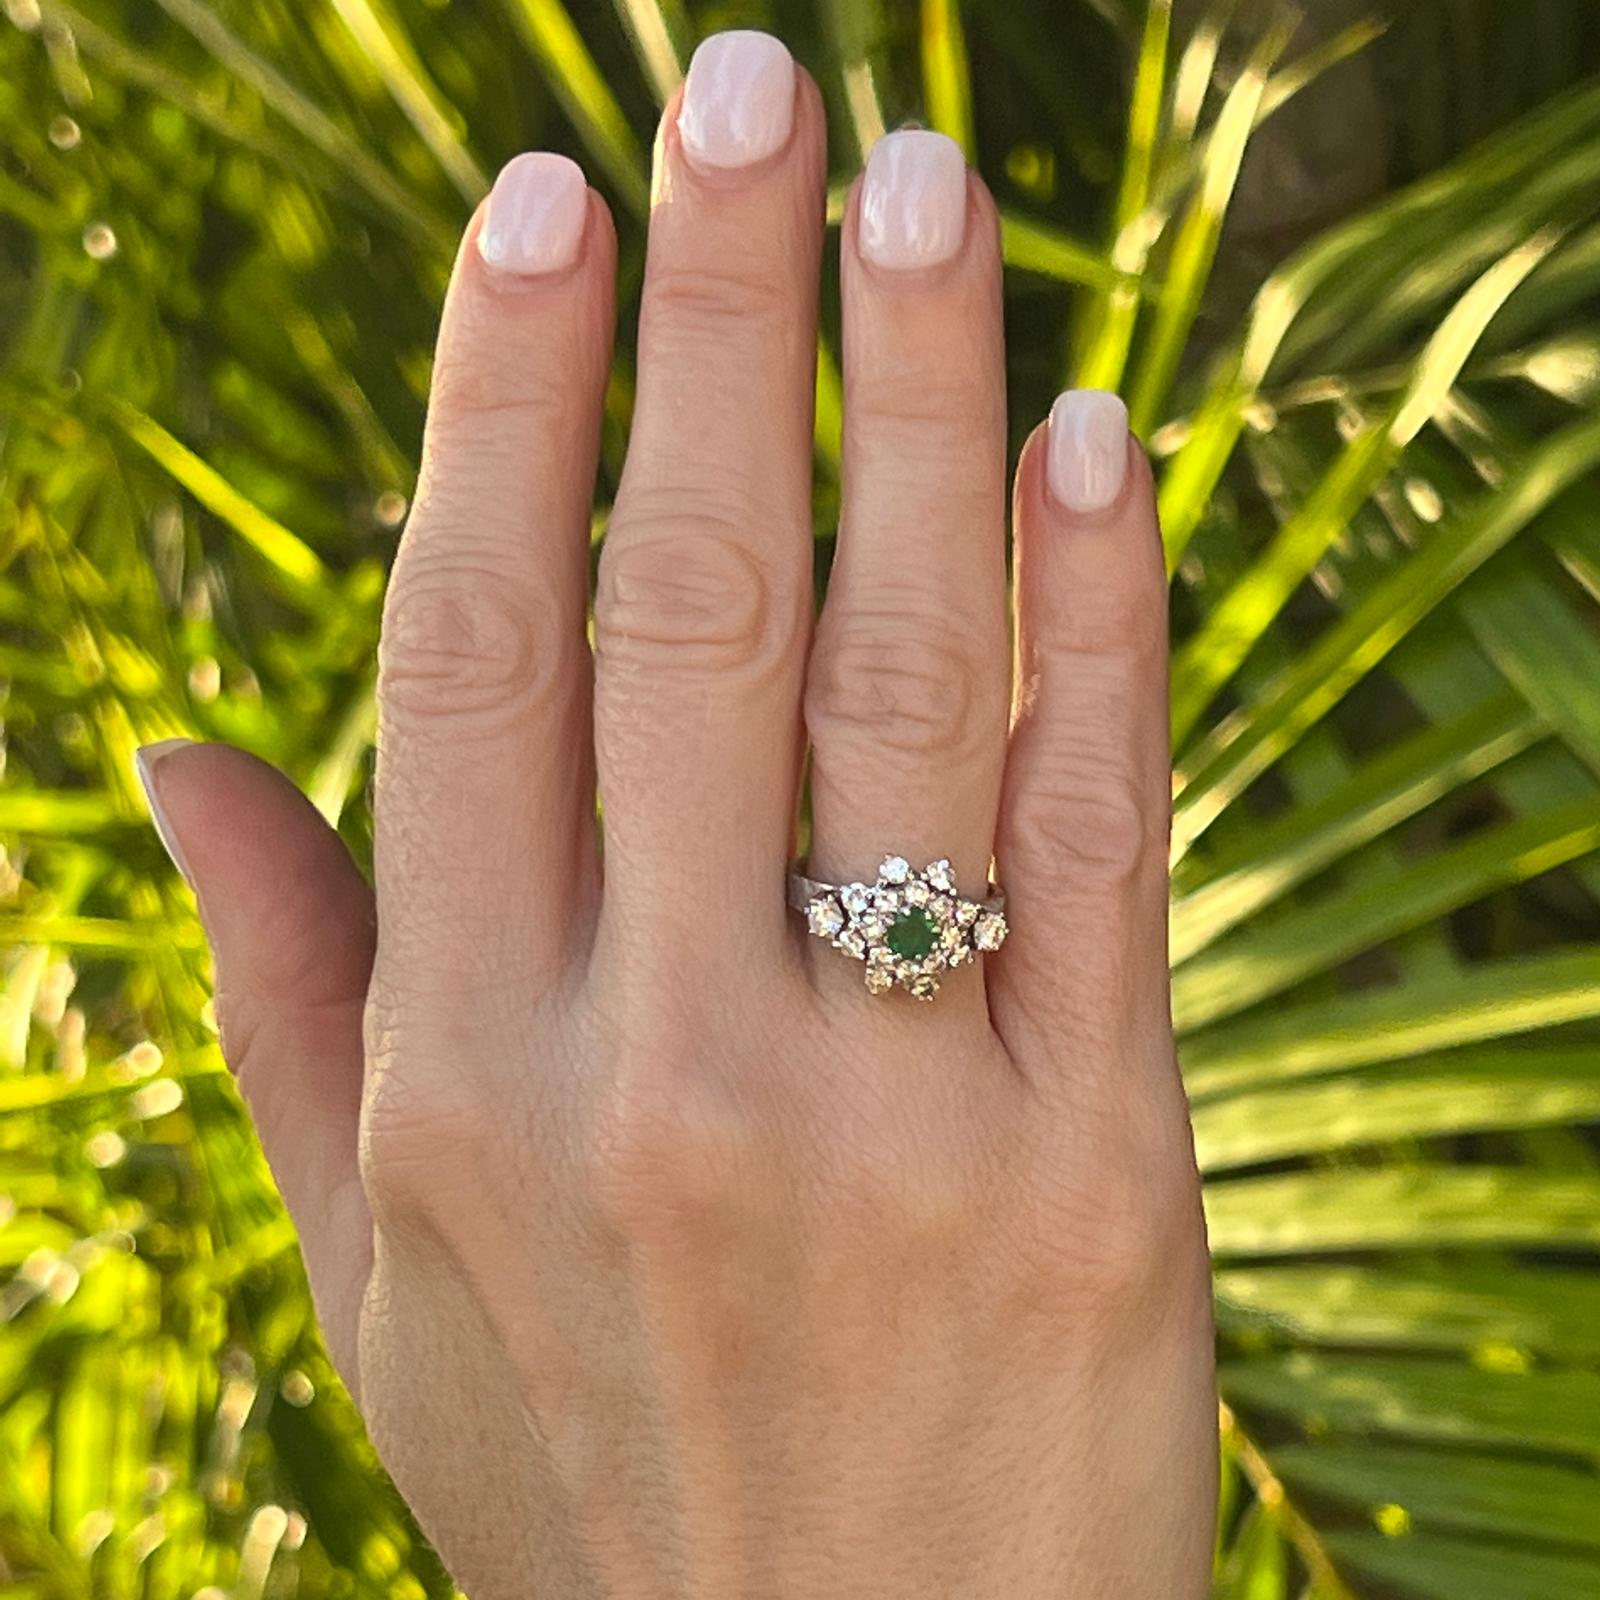 Vintage-Cocktailring mit Diamanten und Smaragden, gefertigt aus Platin. Der Ring hat einen Smaragd von ca. 0,40 Karat in der Mitte und 18 runde Diamanten im Brillantschliff von ca. 1,00 Karat Gesamtgewicht. Die Diamanten sind von der Farbe G-H und